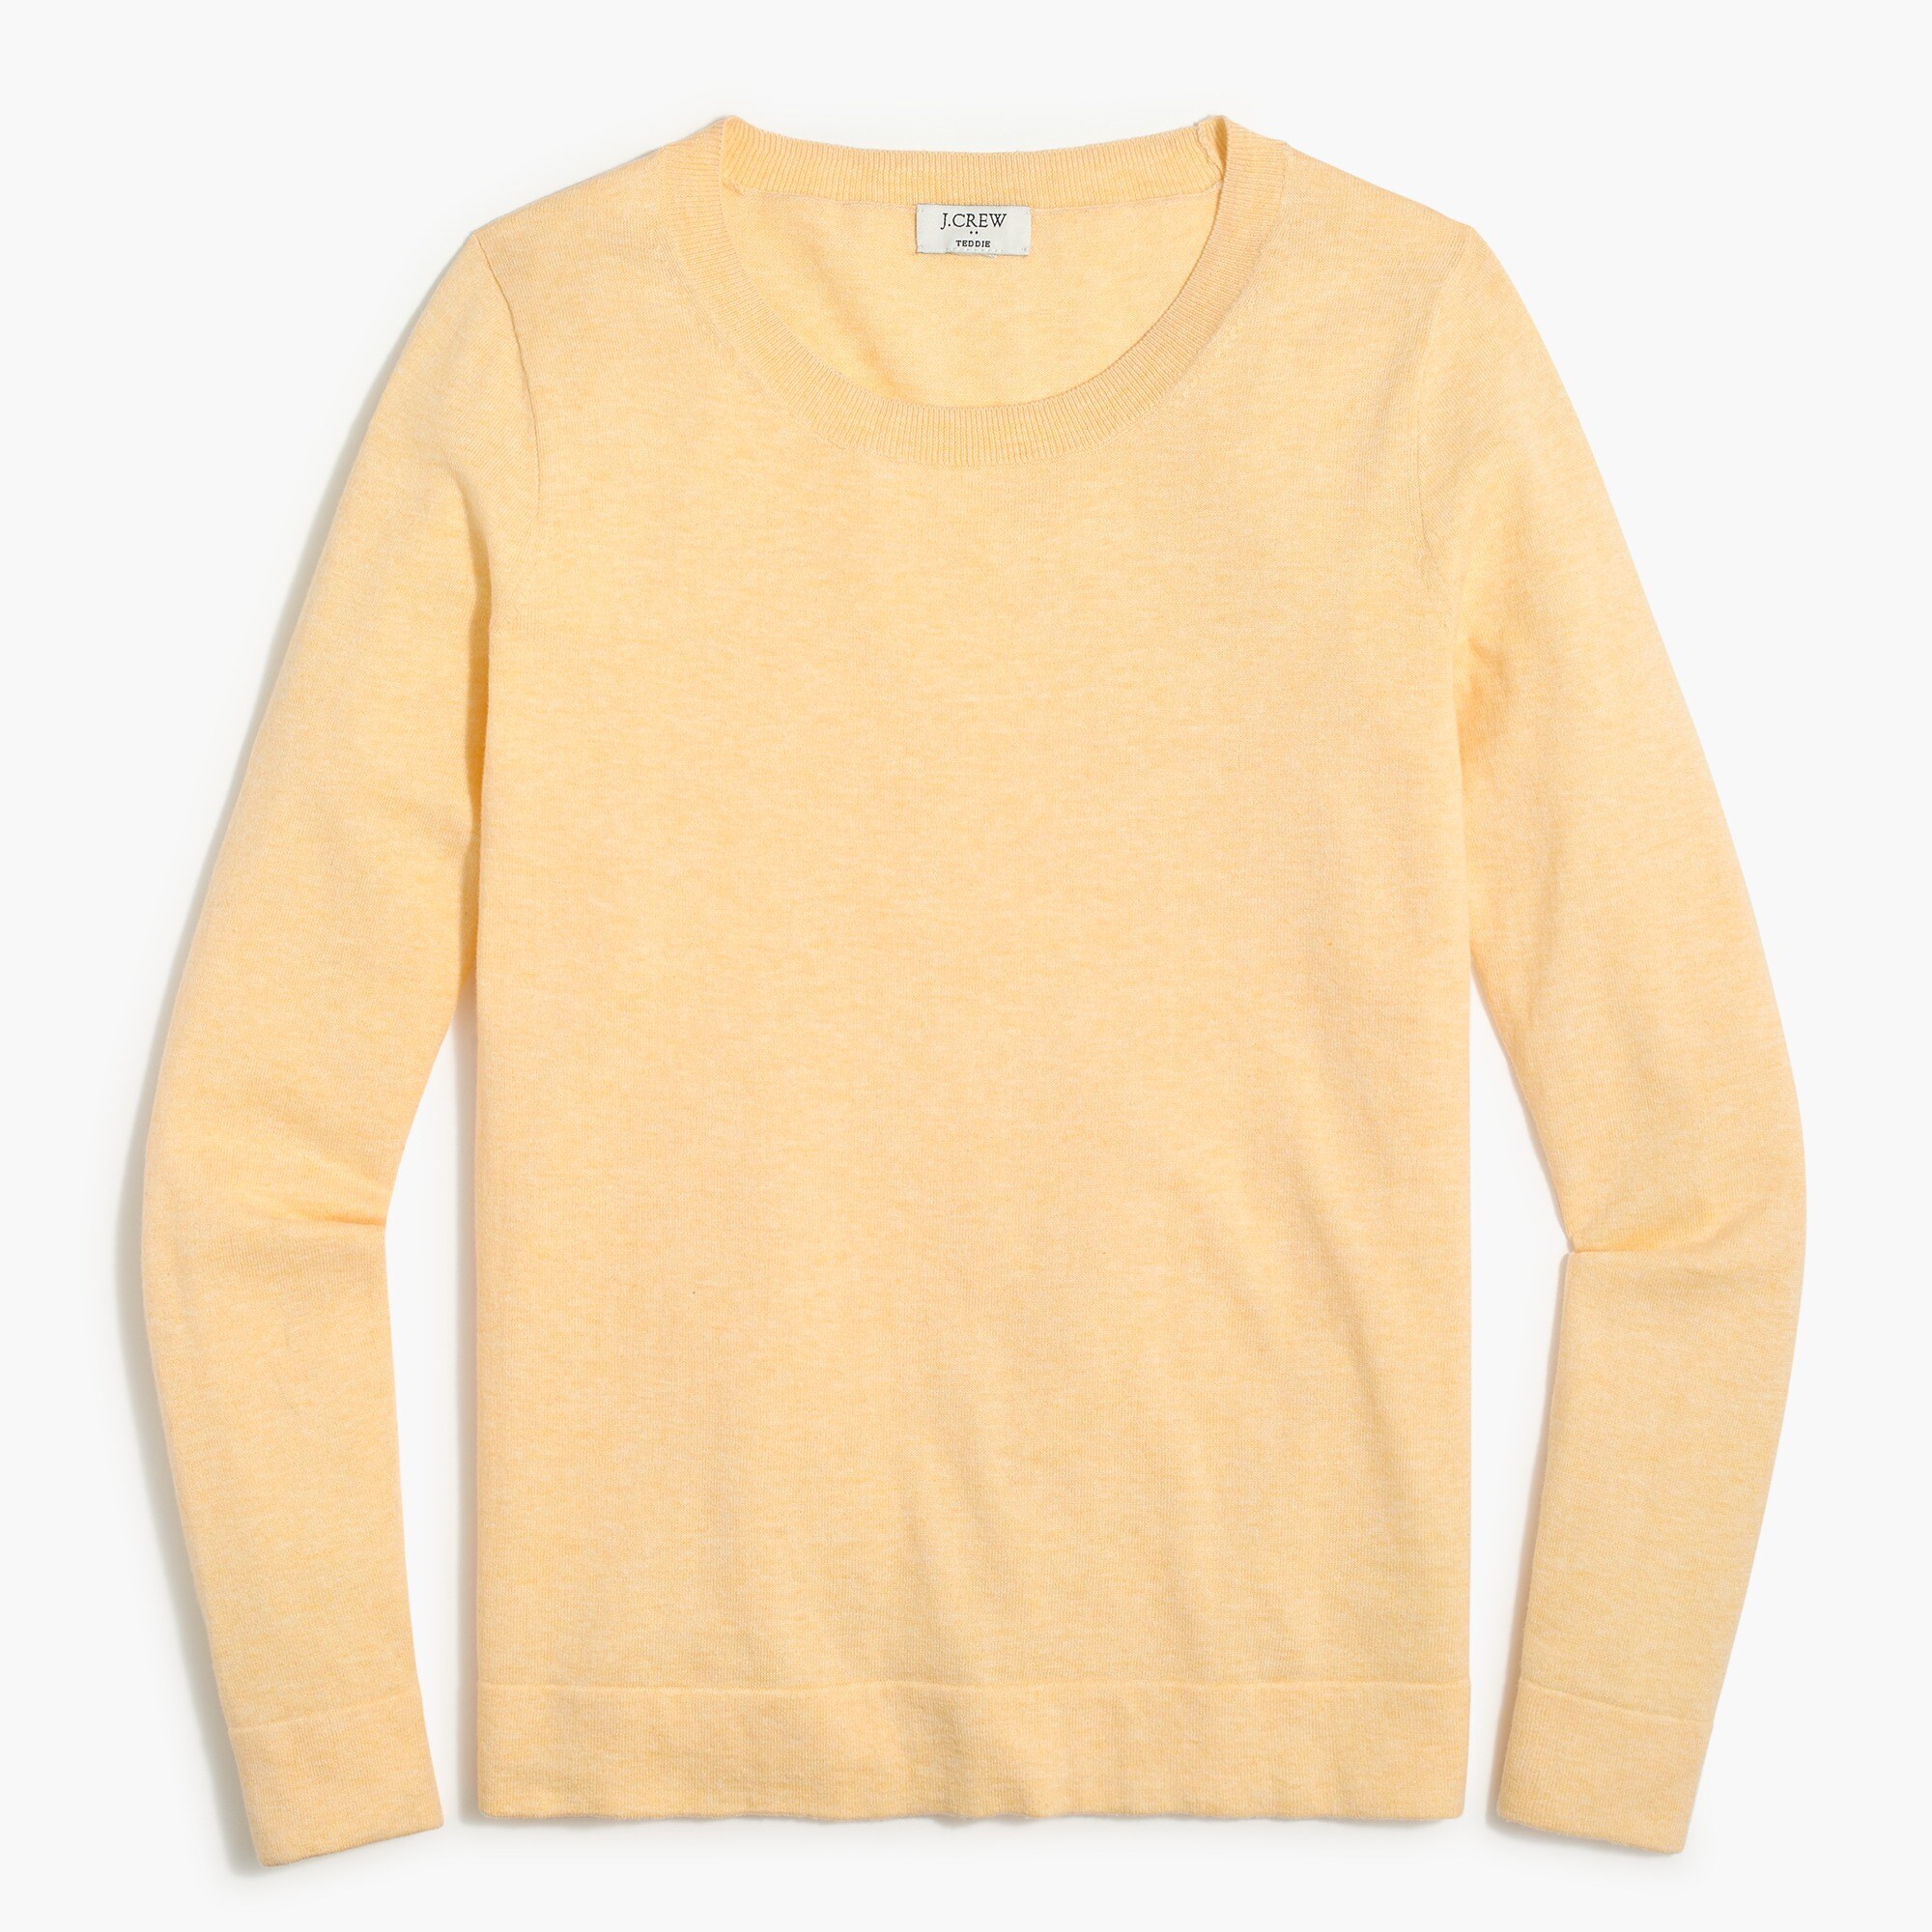  Cotton Teddie sweater